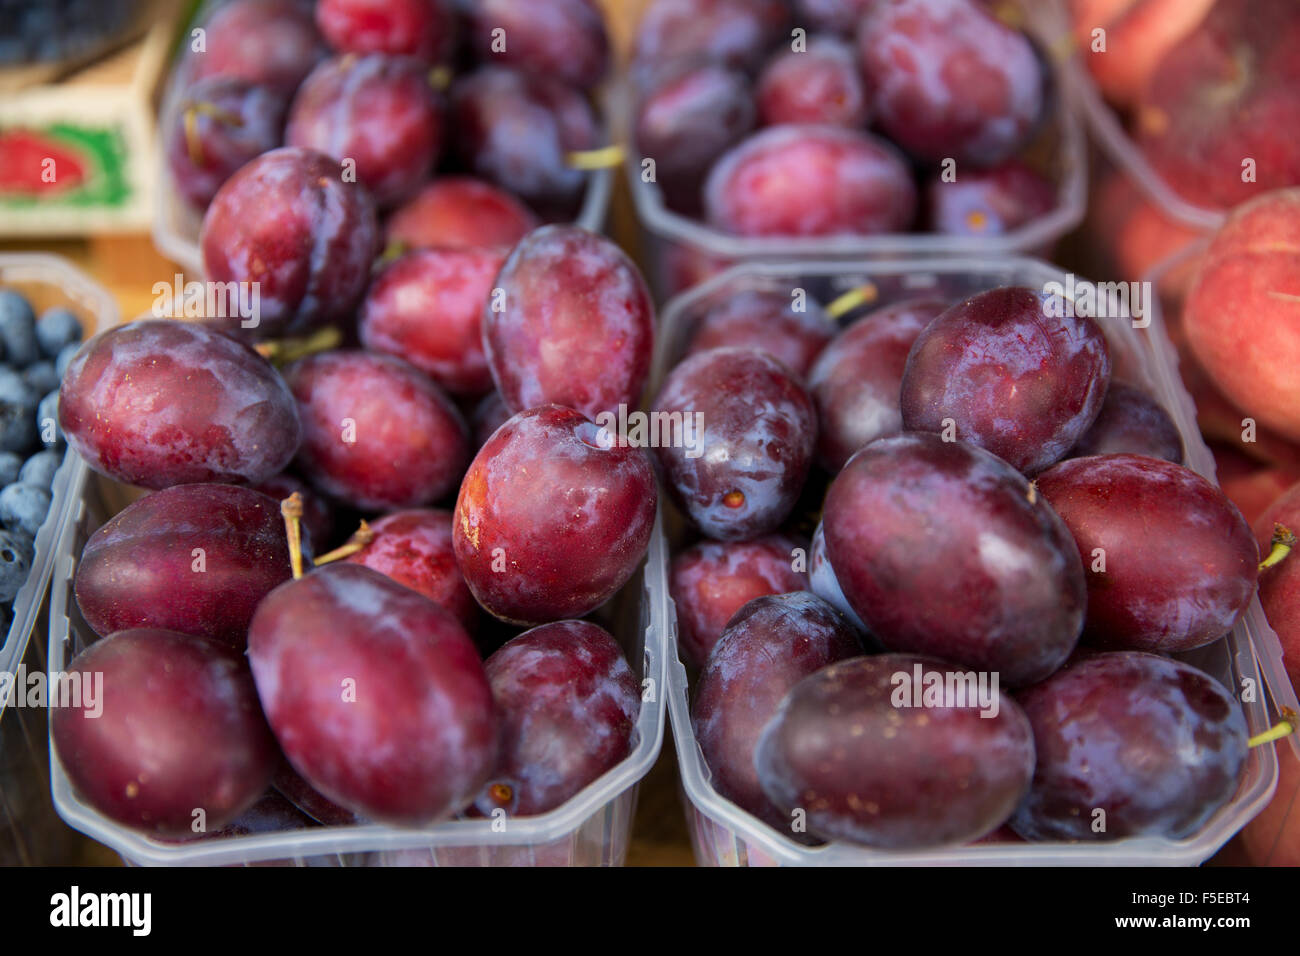 close up of satsuma plums at street market Stock Photo